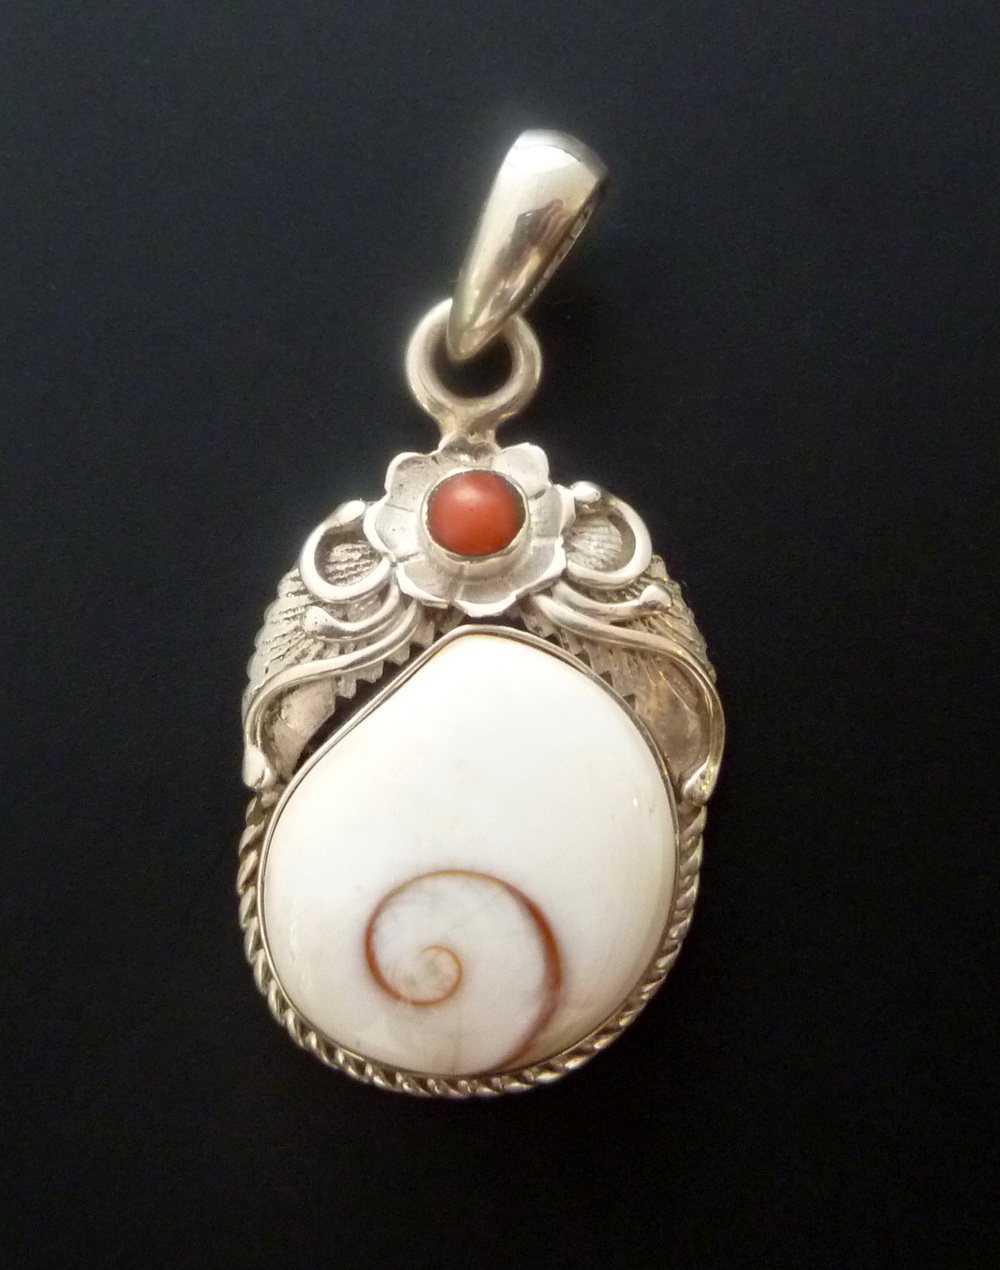 Sterling Silver Shiva Eye Pendant - Ooak Handmade Silver Pendant With Shiva Eye And Red Coral